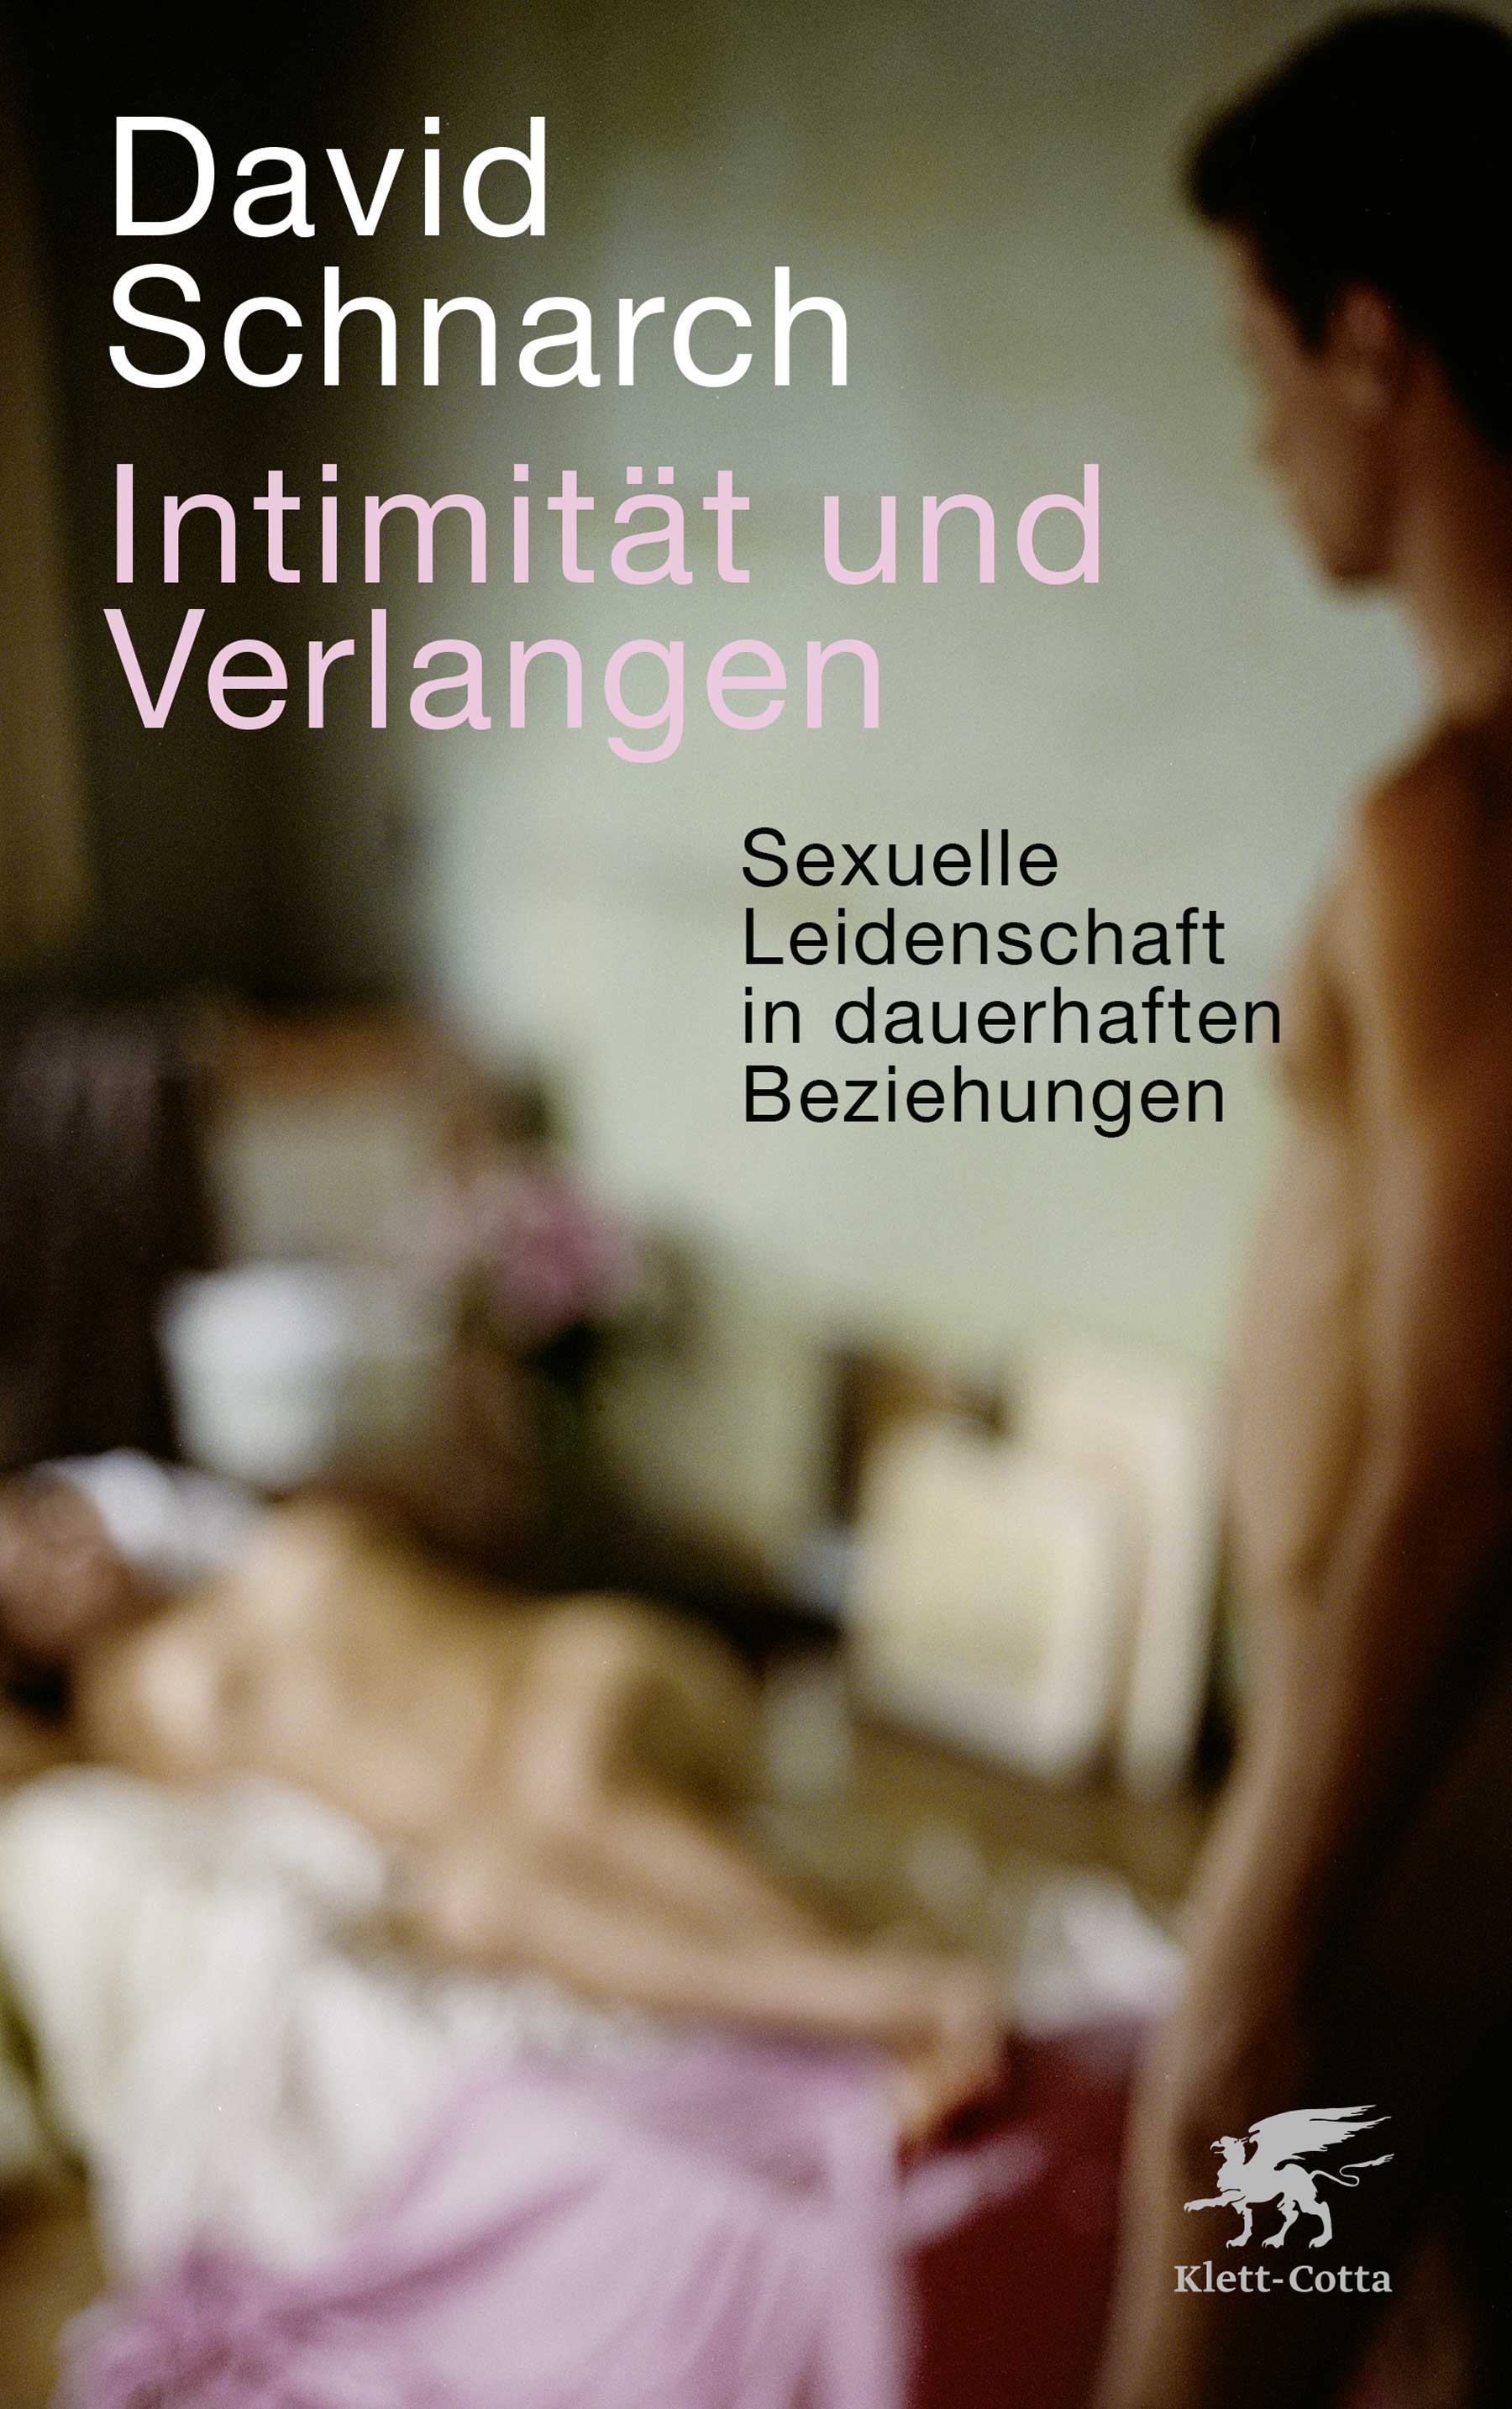 Buchcover Intimität und Verlangen von David Schnarch. Verschwommen zu sehen ist eine nackte Frau auf dem Bett und ein nackter Mann, der in etwas Entfernung vor ihr steht.